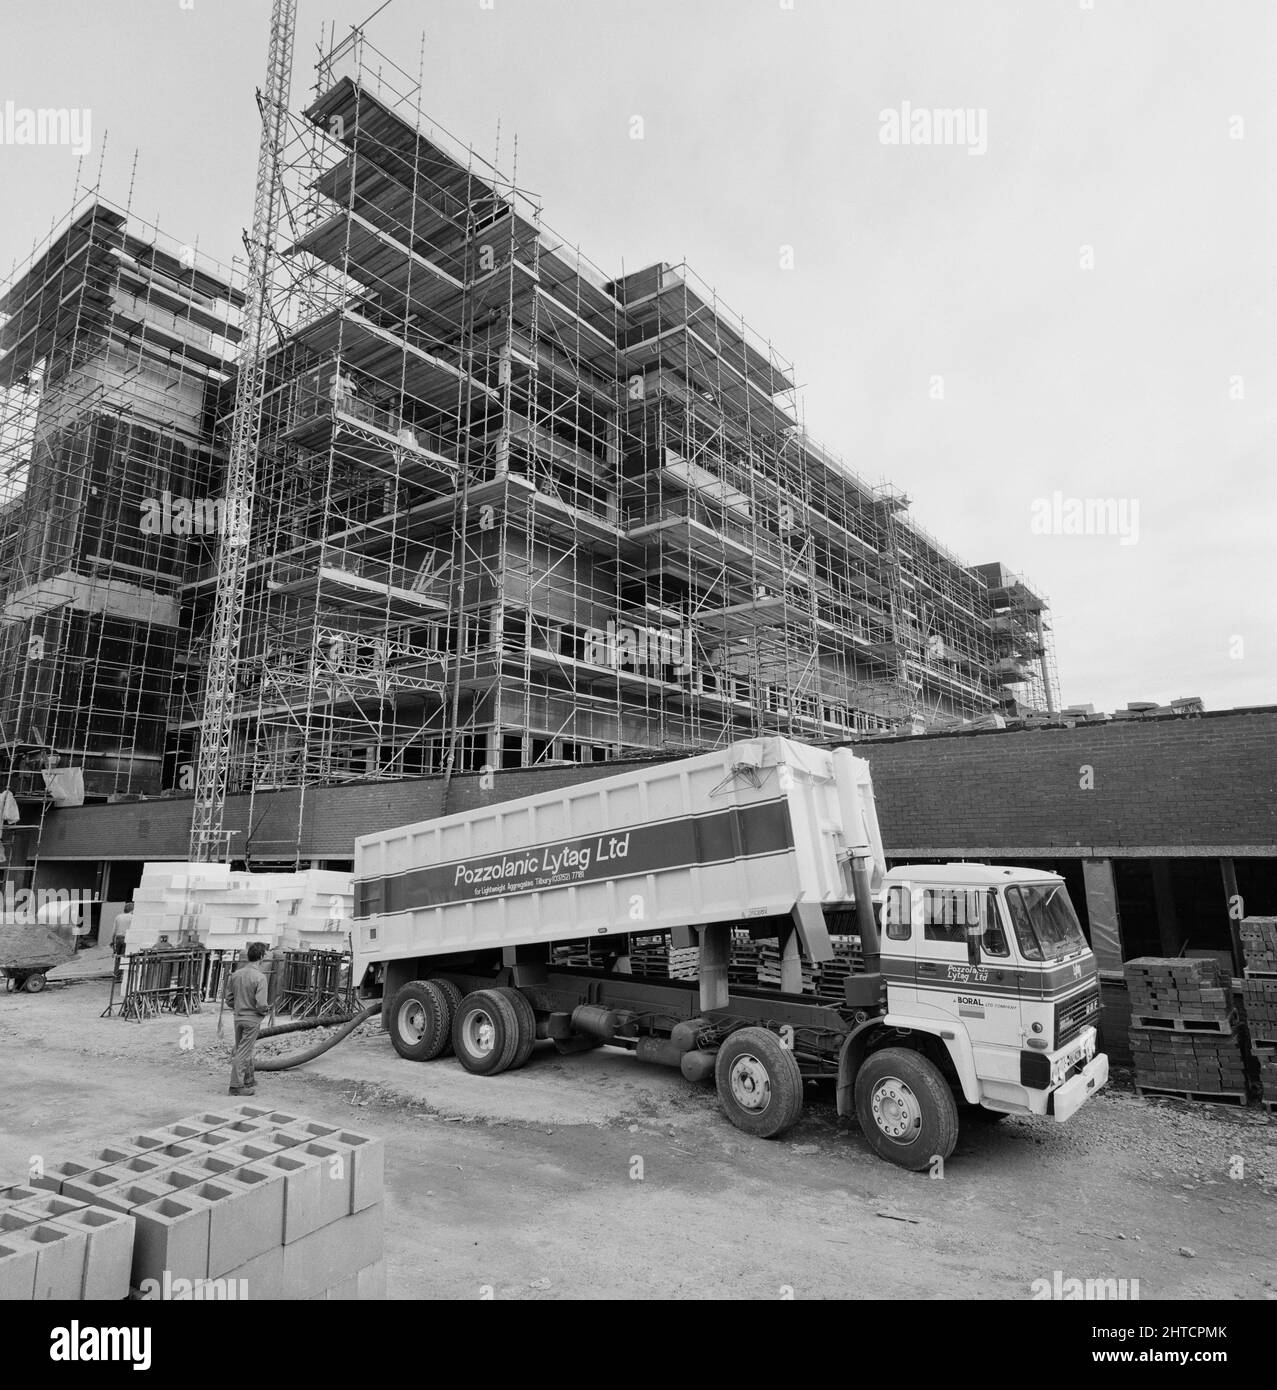 St George's Hospital, Blackshaw Road, Tooting, Wandsworth, Londres, 07/08/1985. Un camion livrant des granulats légers au chantier de construction de l'aile St James à l'hôpital St George, Tooting. « Lytag » était un agrégat léger fabriqué à partir de cendres de combustibles pulvérisées provenant de centrales électriques et utilisé dans les matériaux de construction en béton. Lytag Ltd a développé le produit en 1961 et a été une filiale de John Laing Ltd jusqu'en 1982 quand il a été acheté par pozzolanic Ltd. Pozzolanic Ltd a été à son tour acquis par le GROUPE BORAL, comme le montre la décoration du camion. Banque D'Images